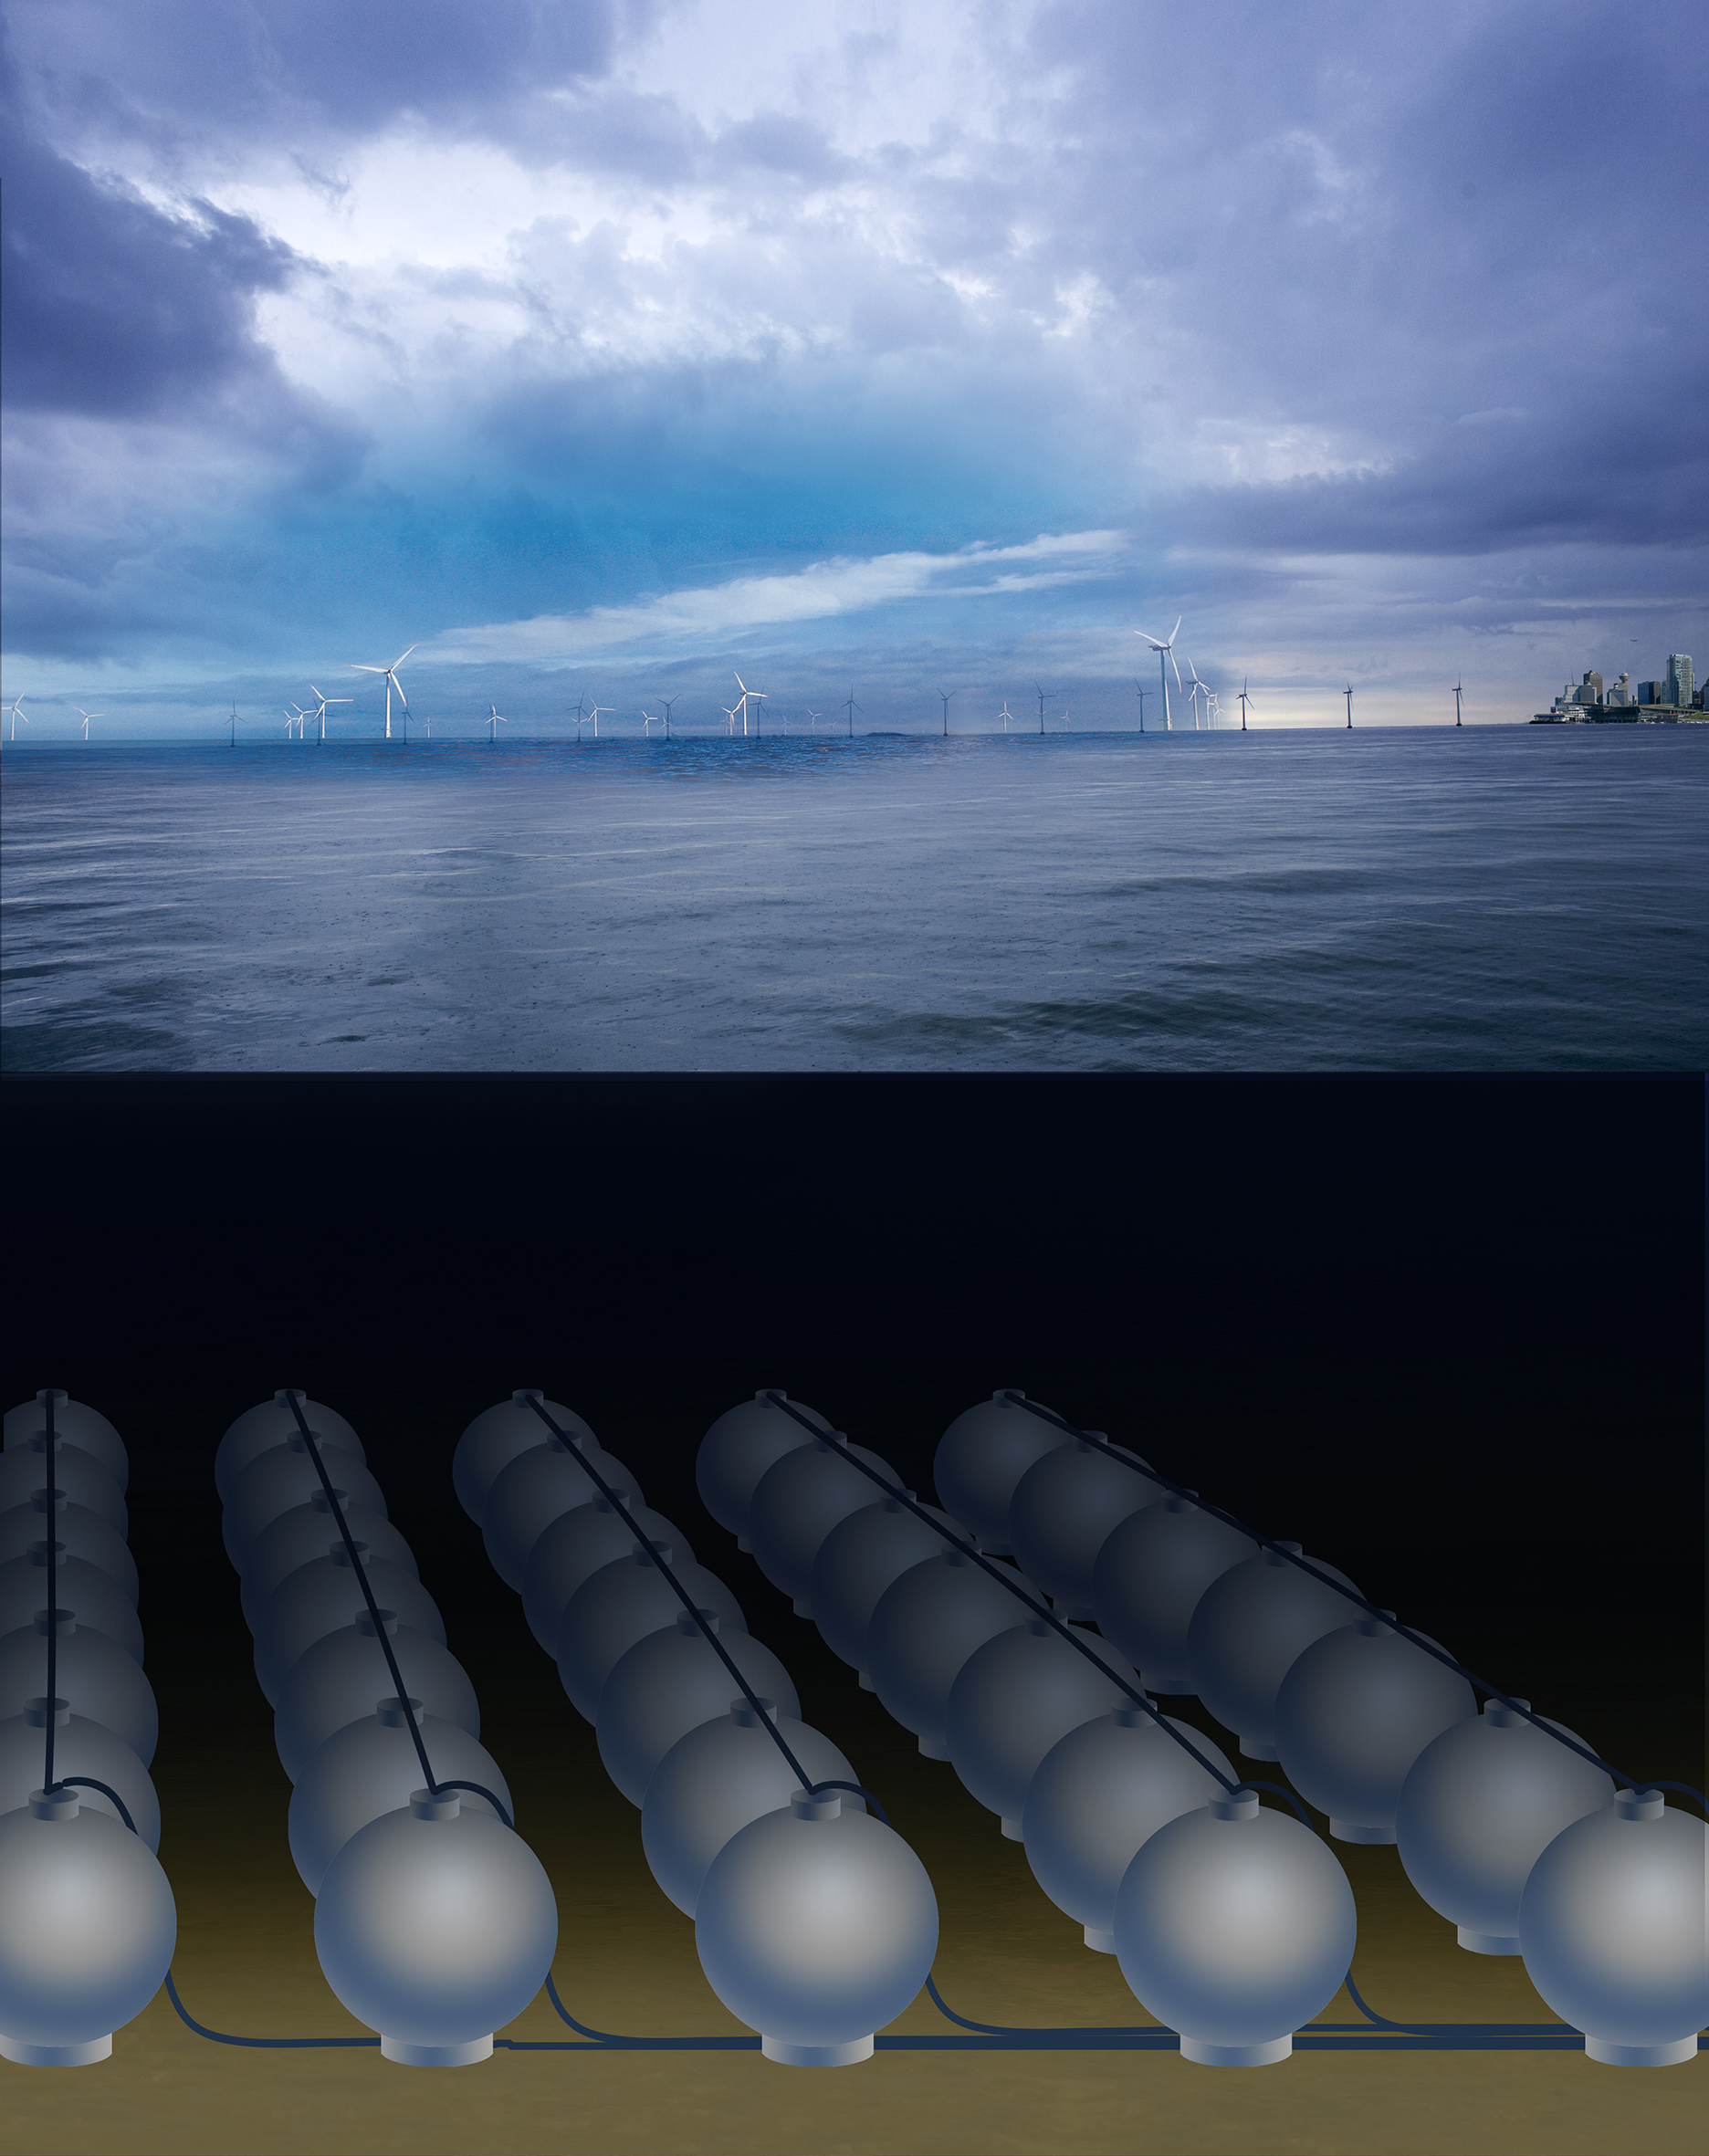 Konzept für ein Meeres-Pumpspeicherkraftwerk mit vielen Kugelspeichern  (ca. 30 m Durchmesser) in 600 - 800 Metern Wassertiefe zur Zwischenspeicherung von Offshore-Strom 